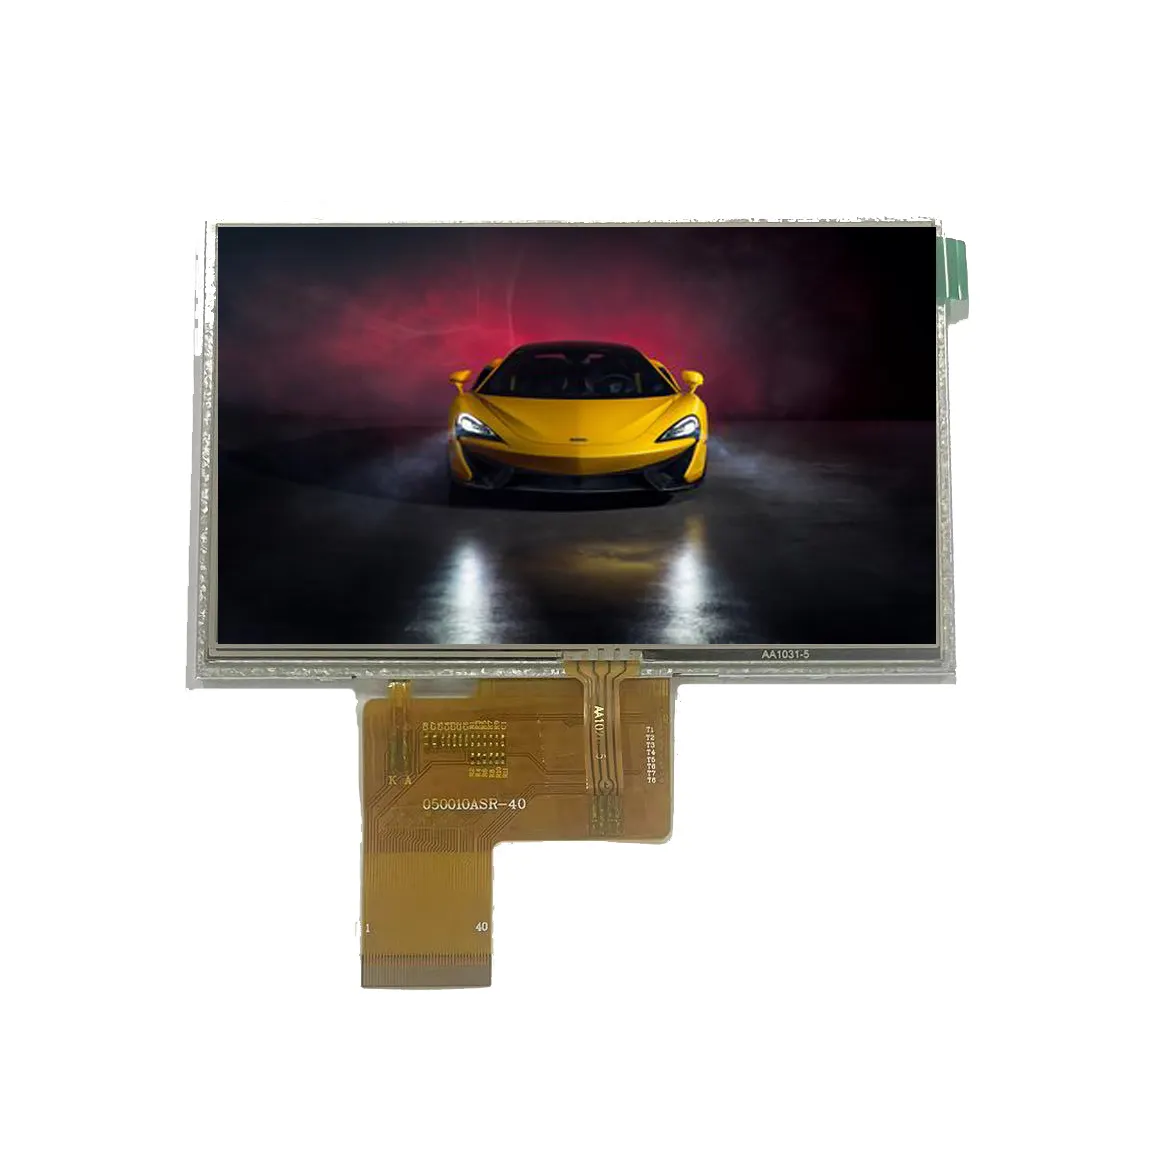 Écran tactile TFT LCD capacitif, résolution 5.0x800, avec interface RGB, 480 pouces, nouveau